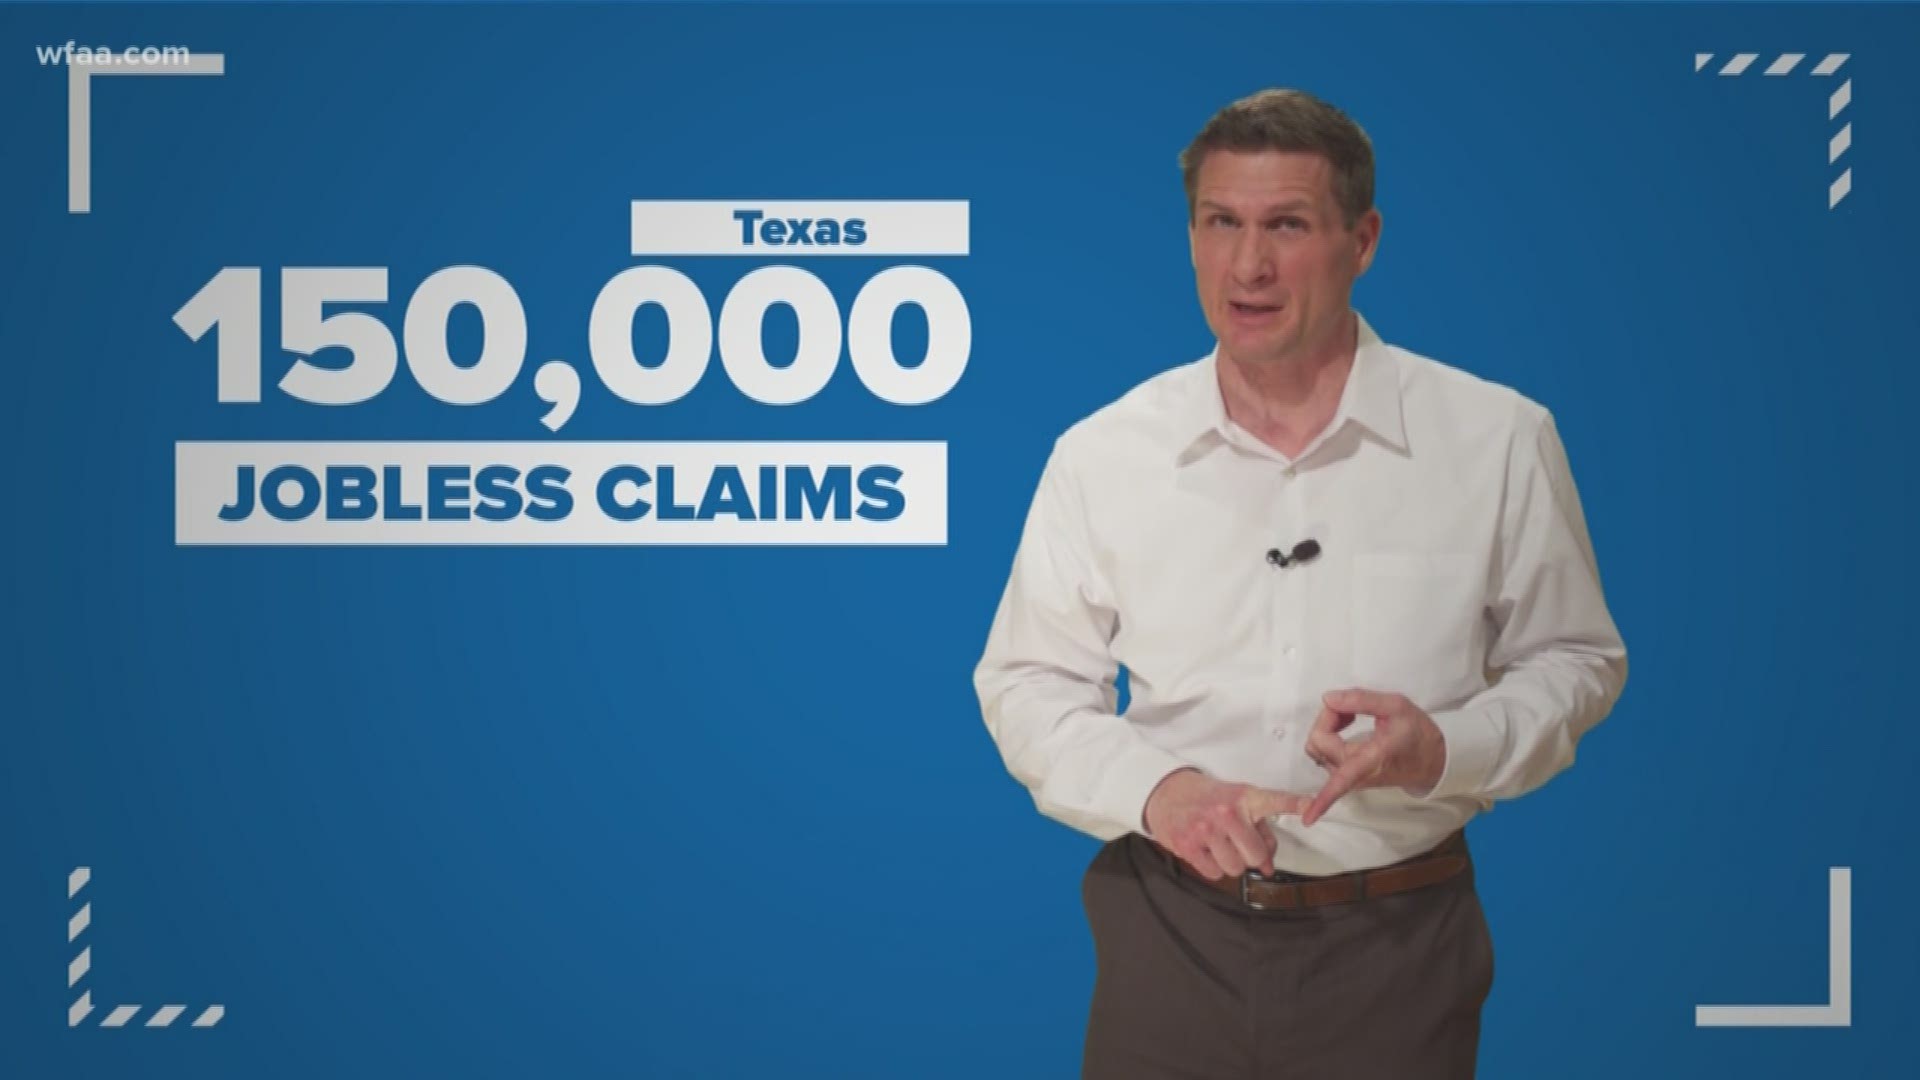 In Texas, we know at least 150,000 people lost their jobs last week.